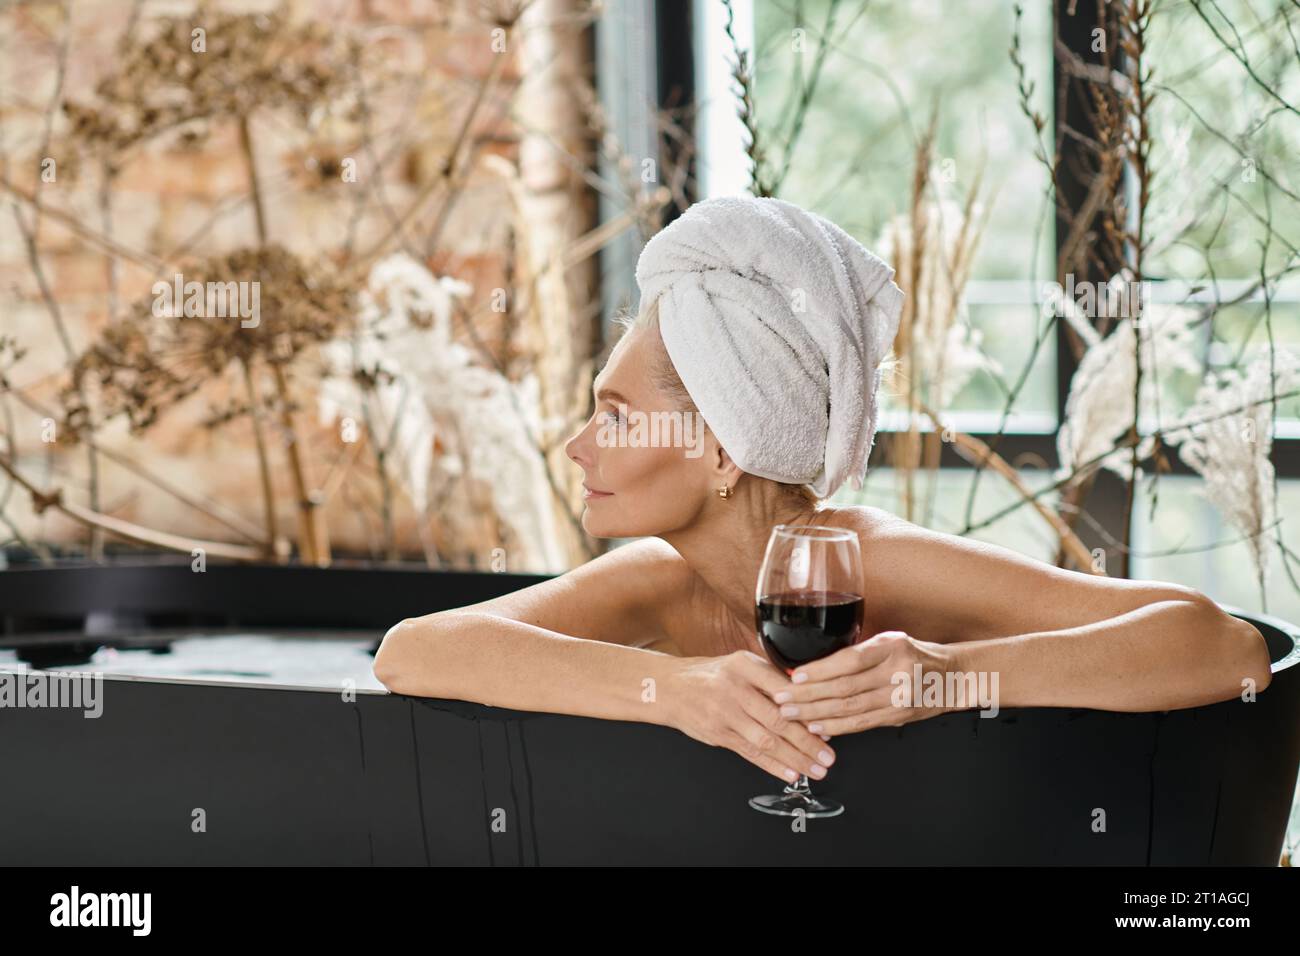 donna rilassata e sognante con un asciugamano bianco sulla testa che regge un bicchiere di vino rosso e fa il bagno Foto Stock